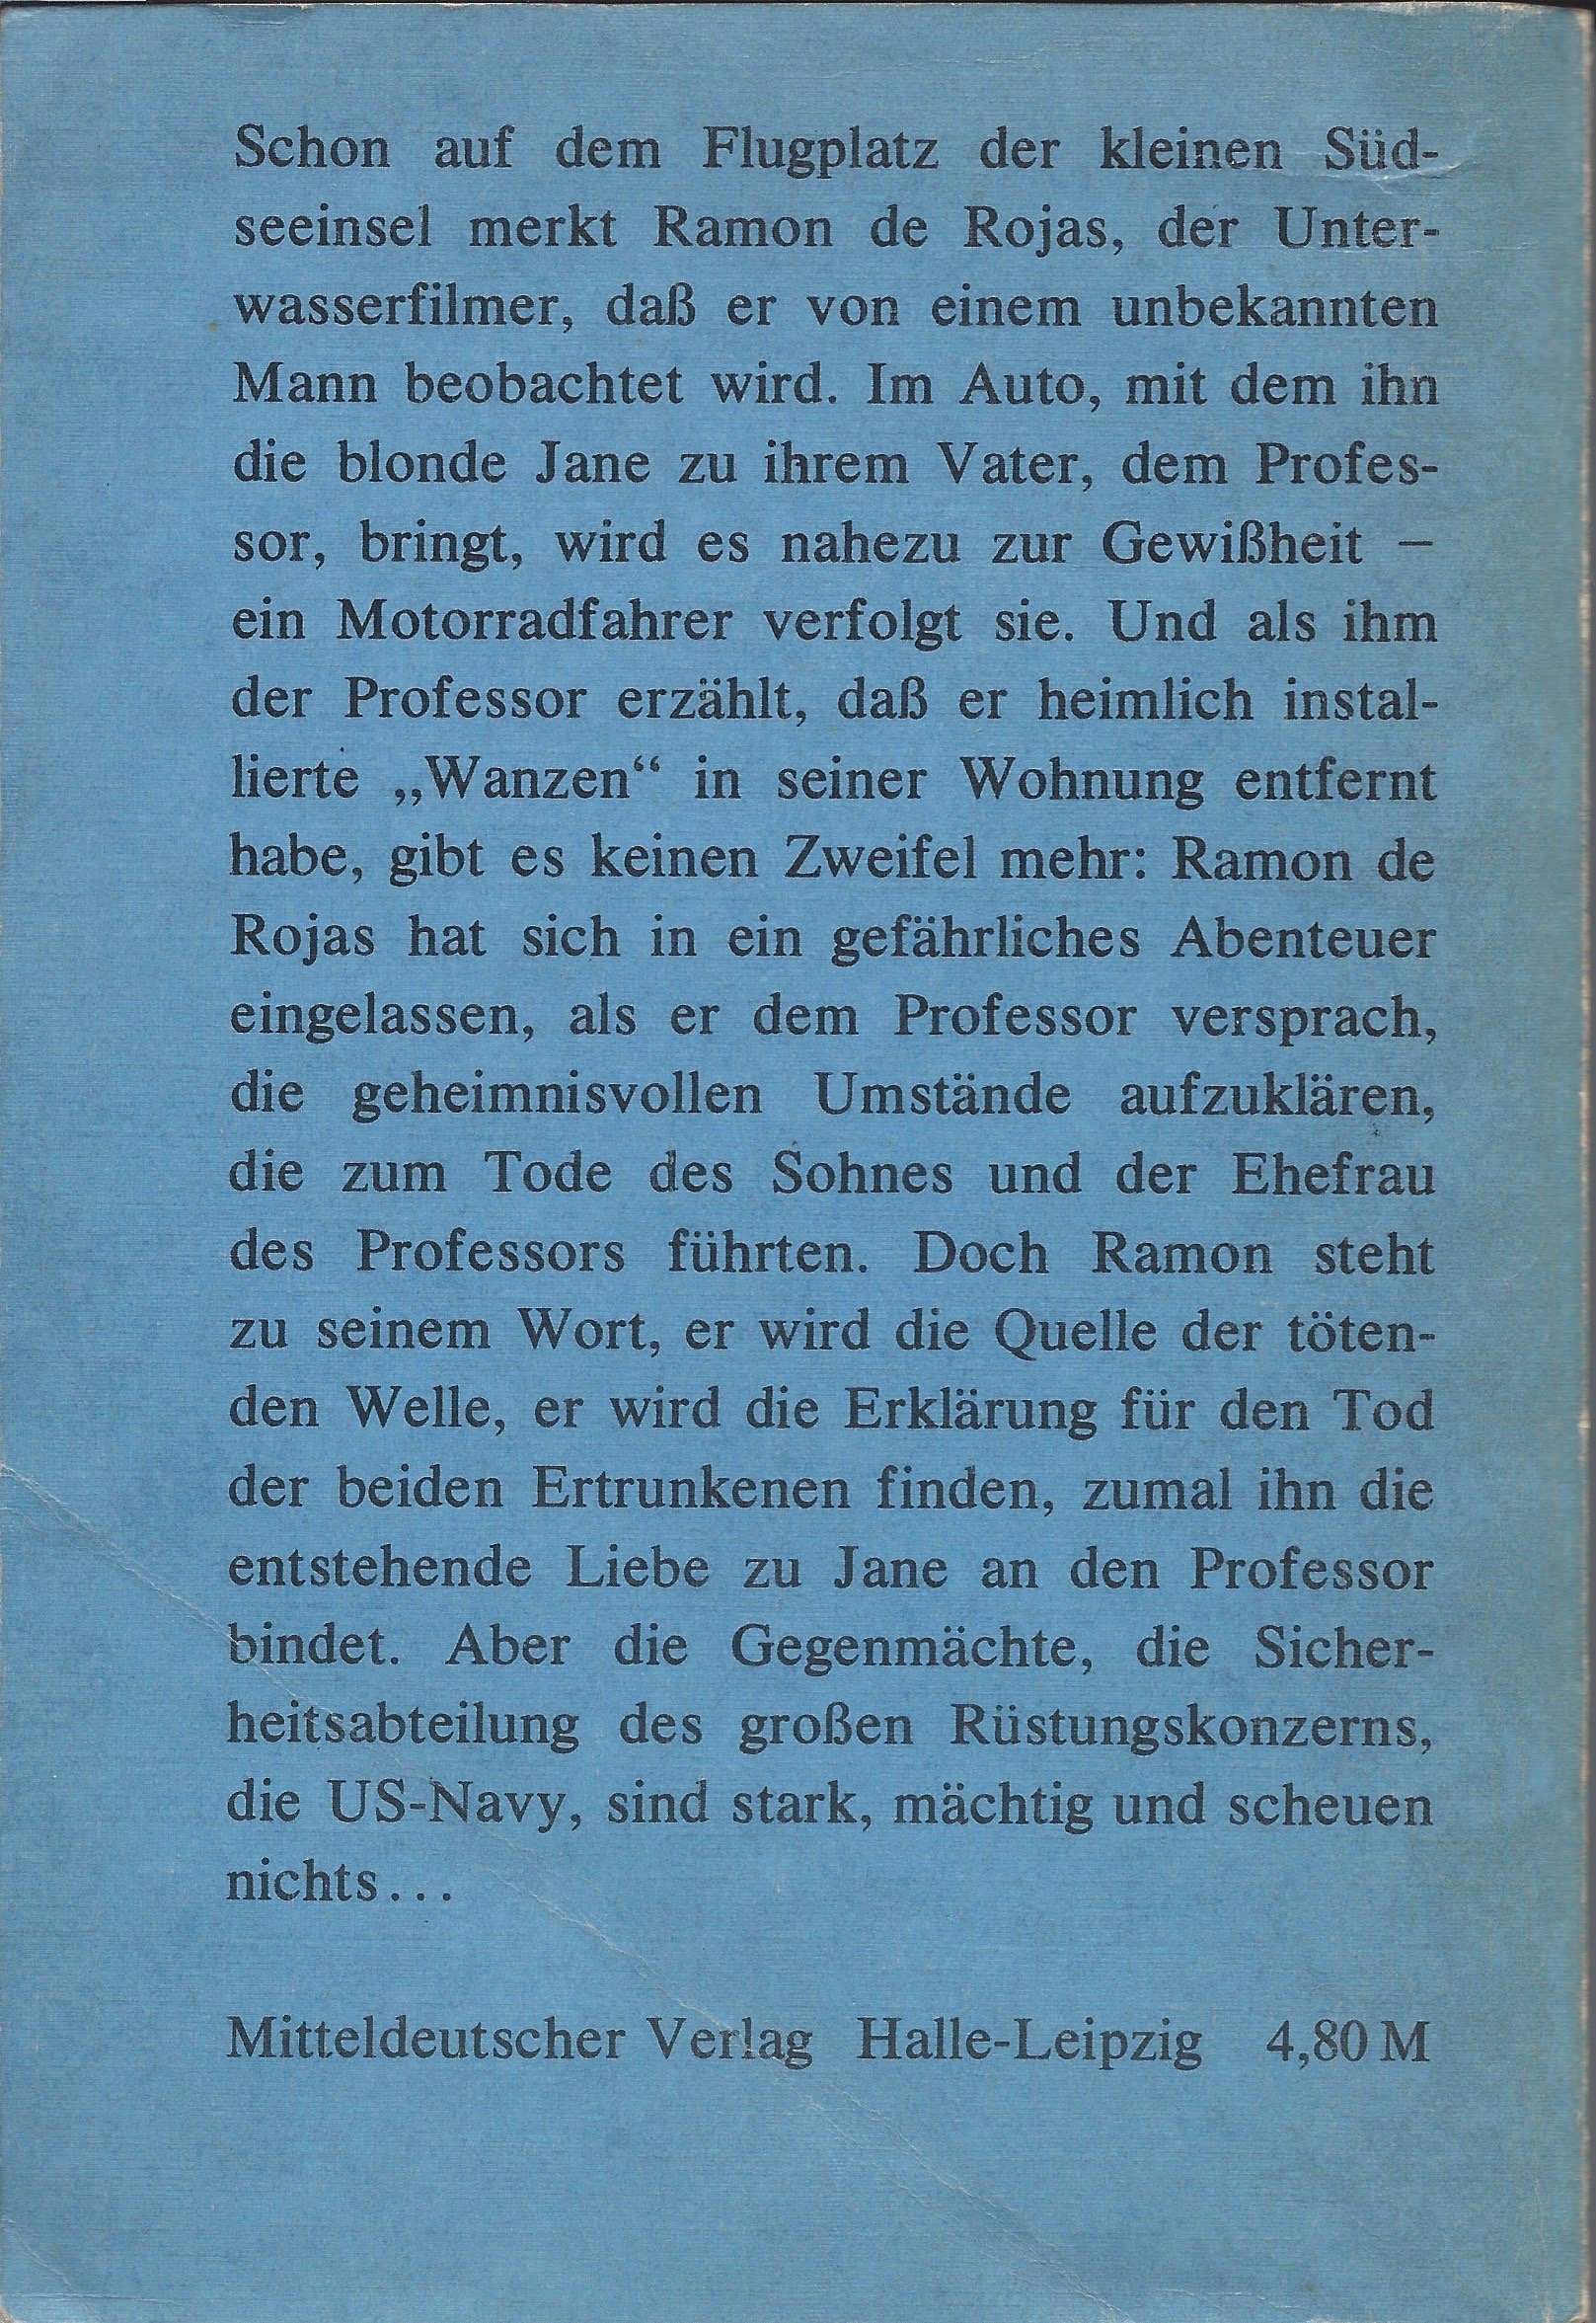 Authentische Rückseite vom Buch "Die tötende Welle" von Otto Bonhoff, Mitteldeutscher Verlag Halle-Leipzig, 1979